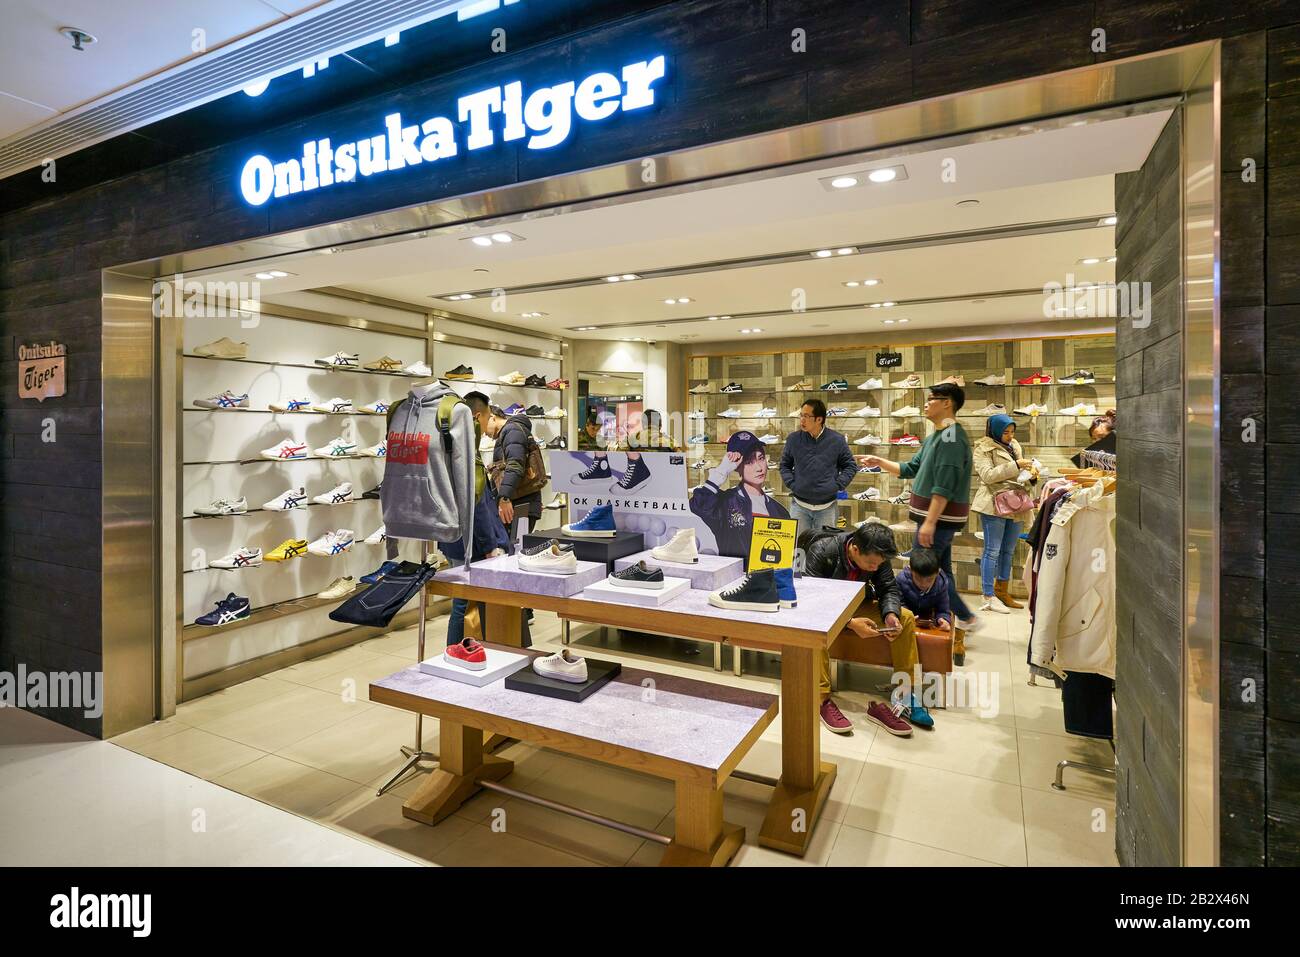 tiger onitsuka hong kong stores